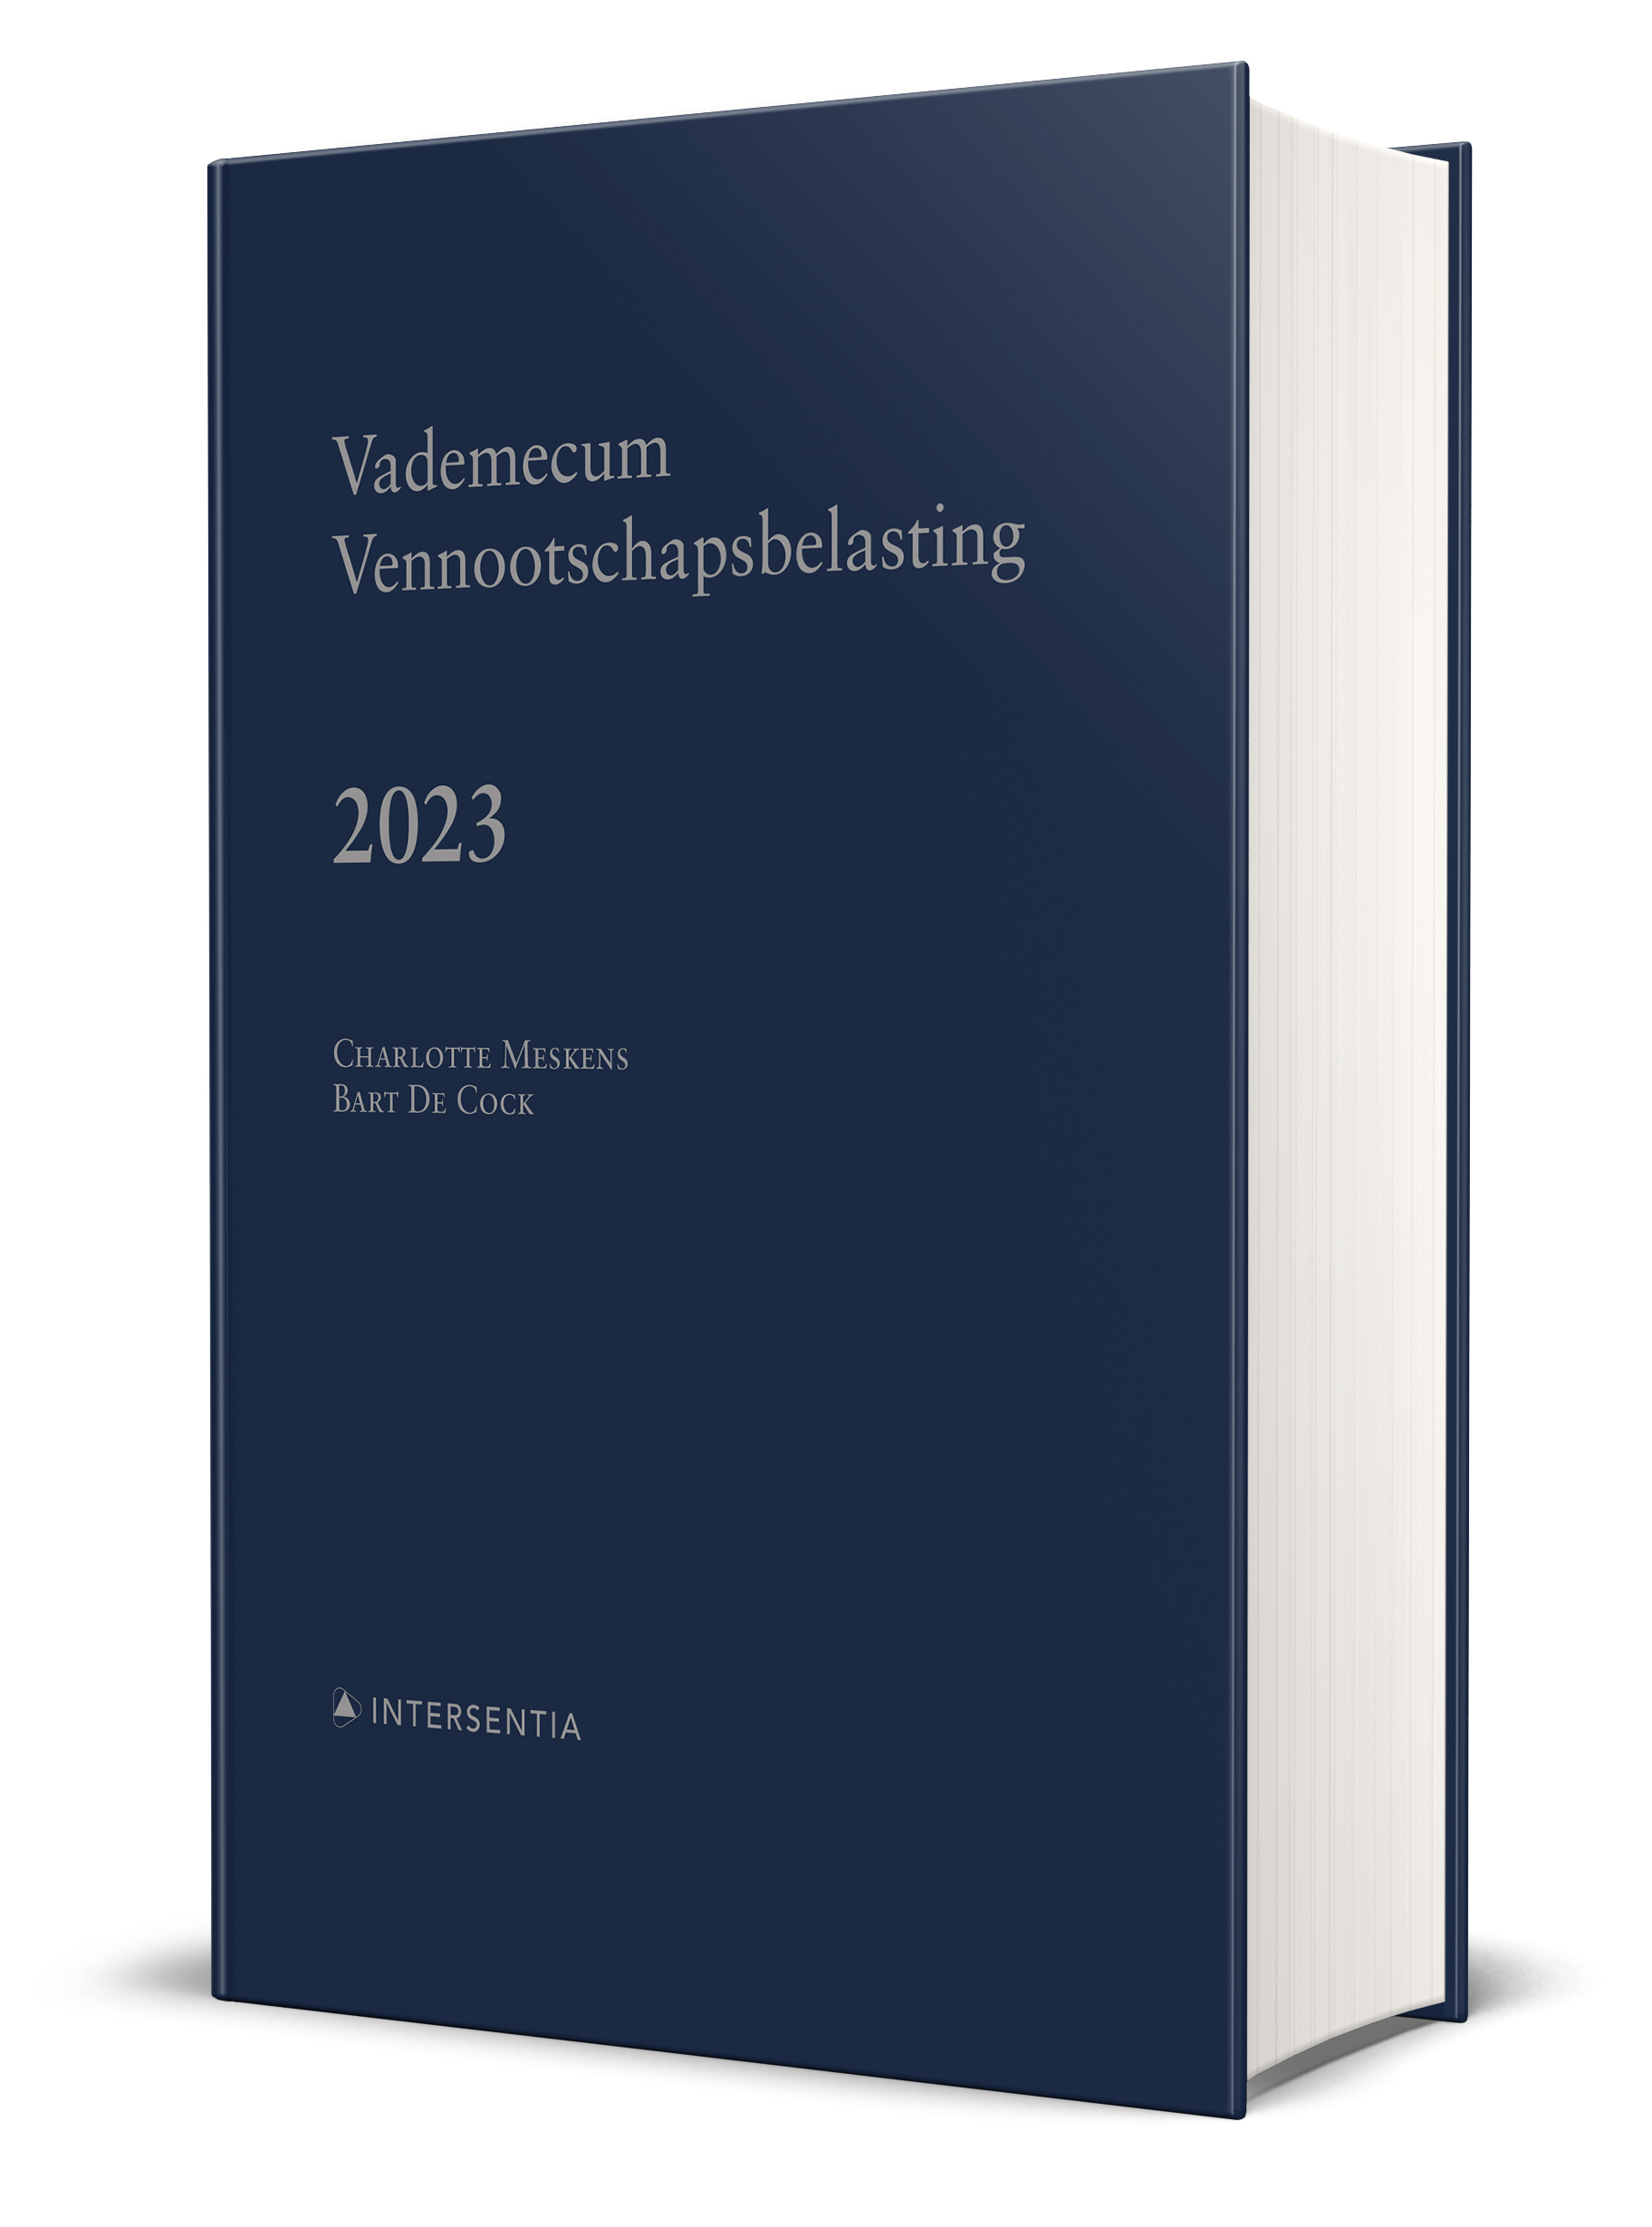 Vademecum_Vennootschapsbelasting_2022_3D.jpg